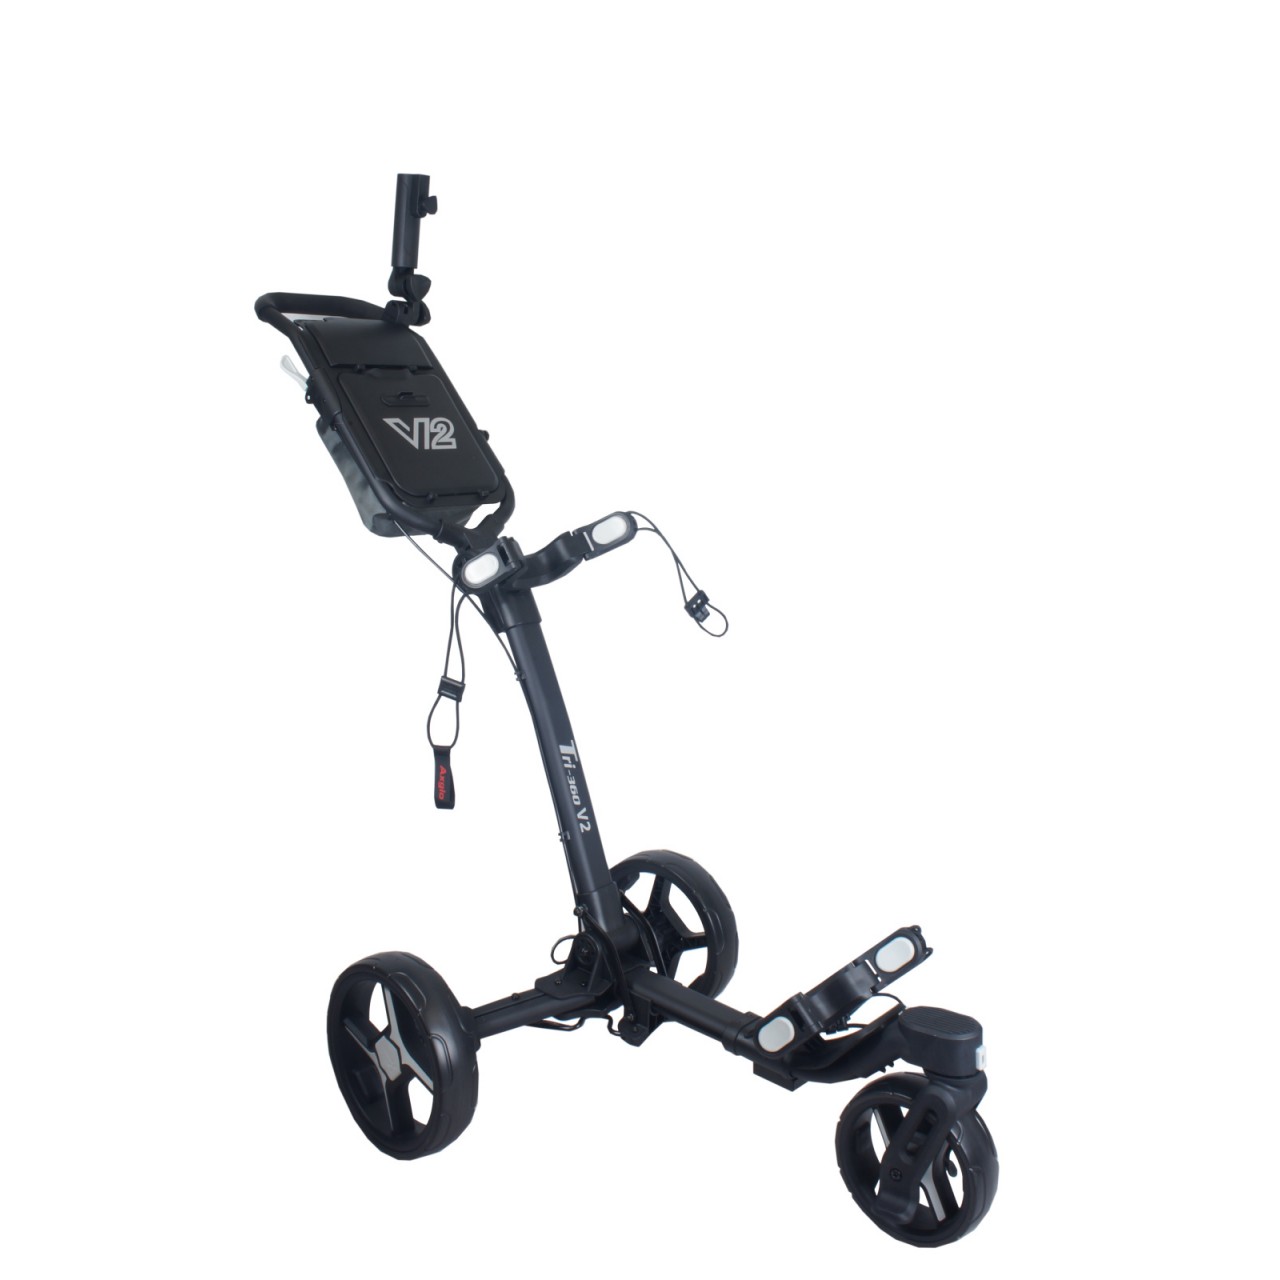 Levně AXGLO Tri-360 V2 golfový vozík, černý/šedý